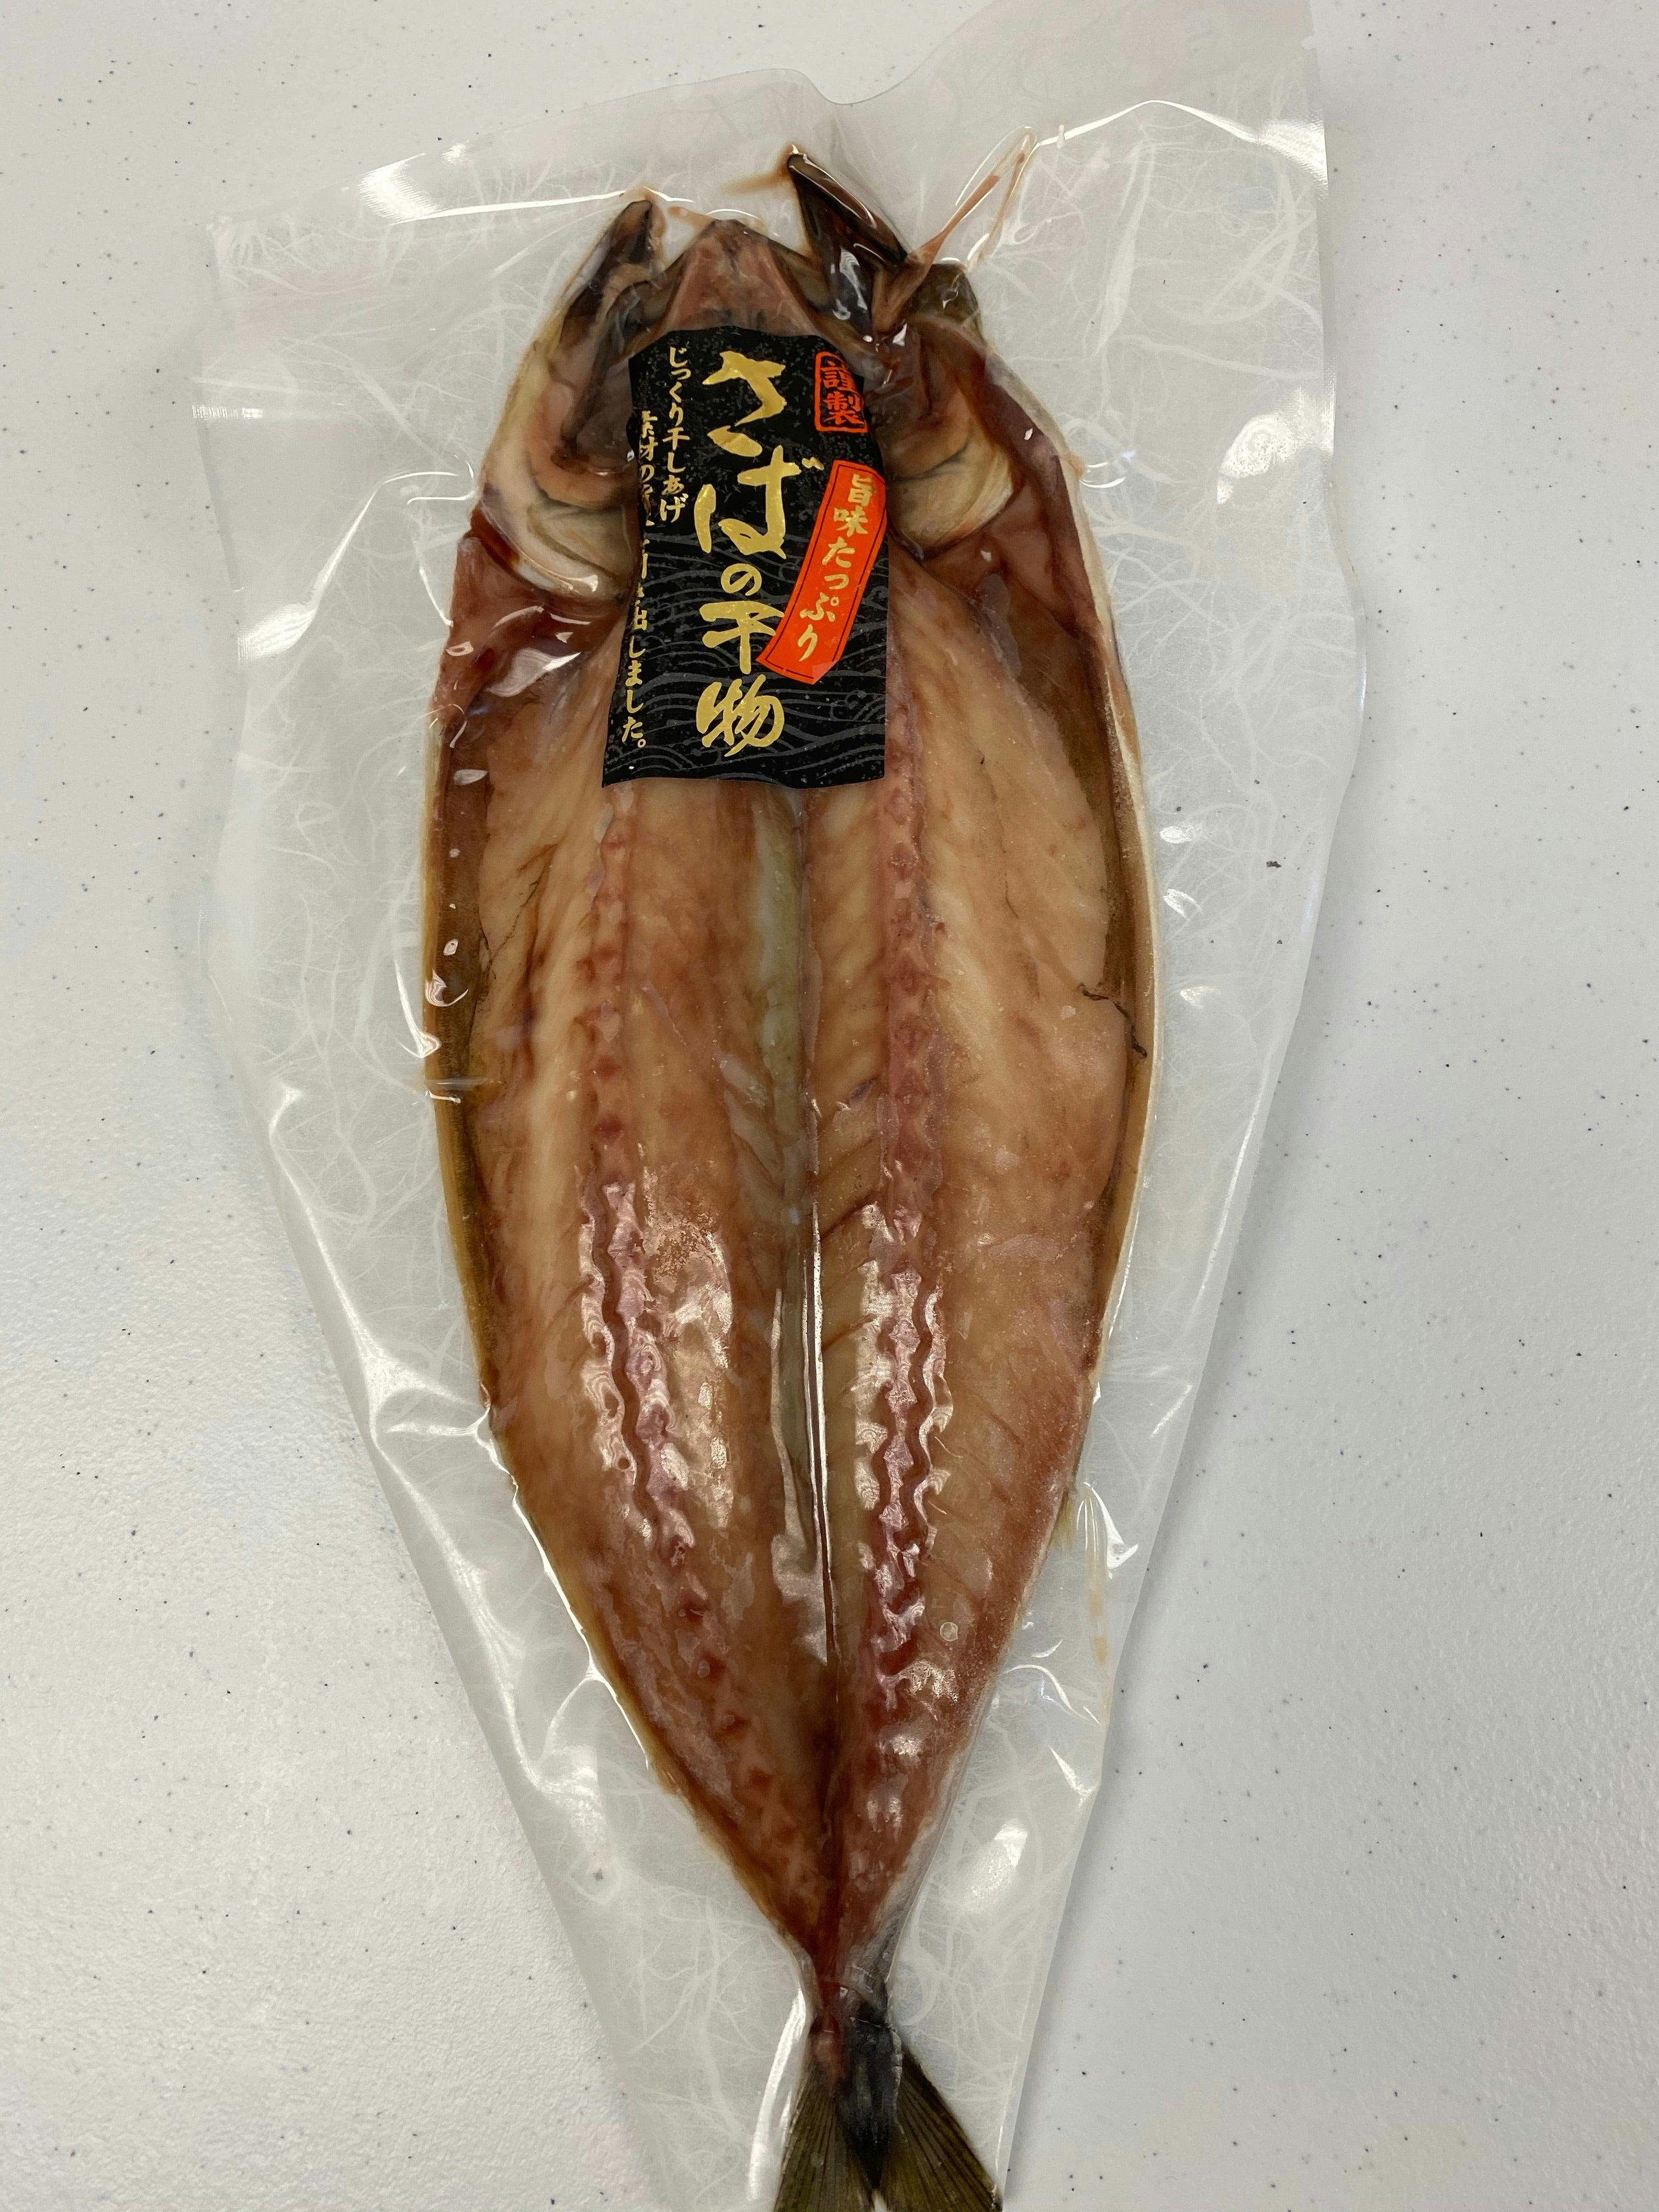 日本进口 马鲛鱼 可烤可香煎可酱烧